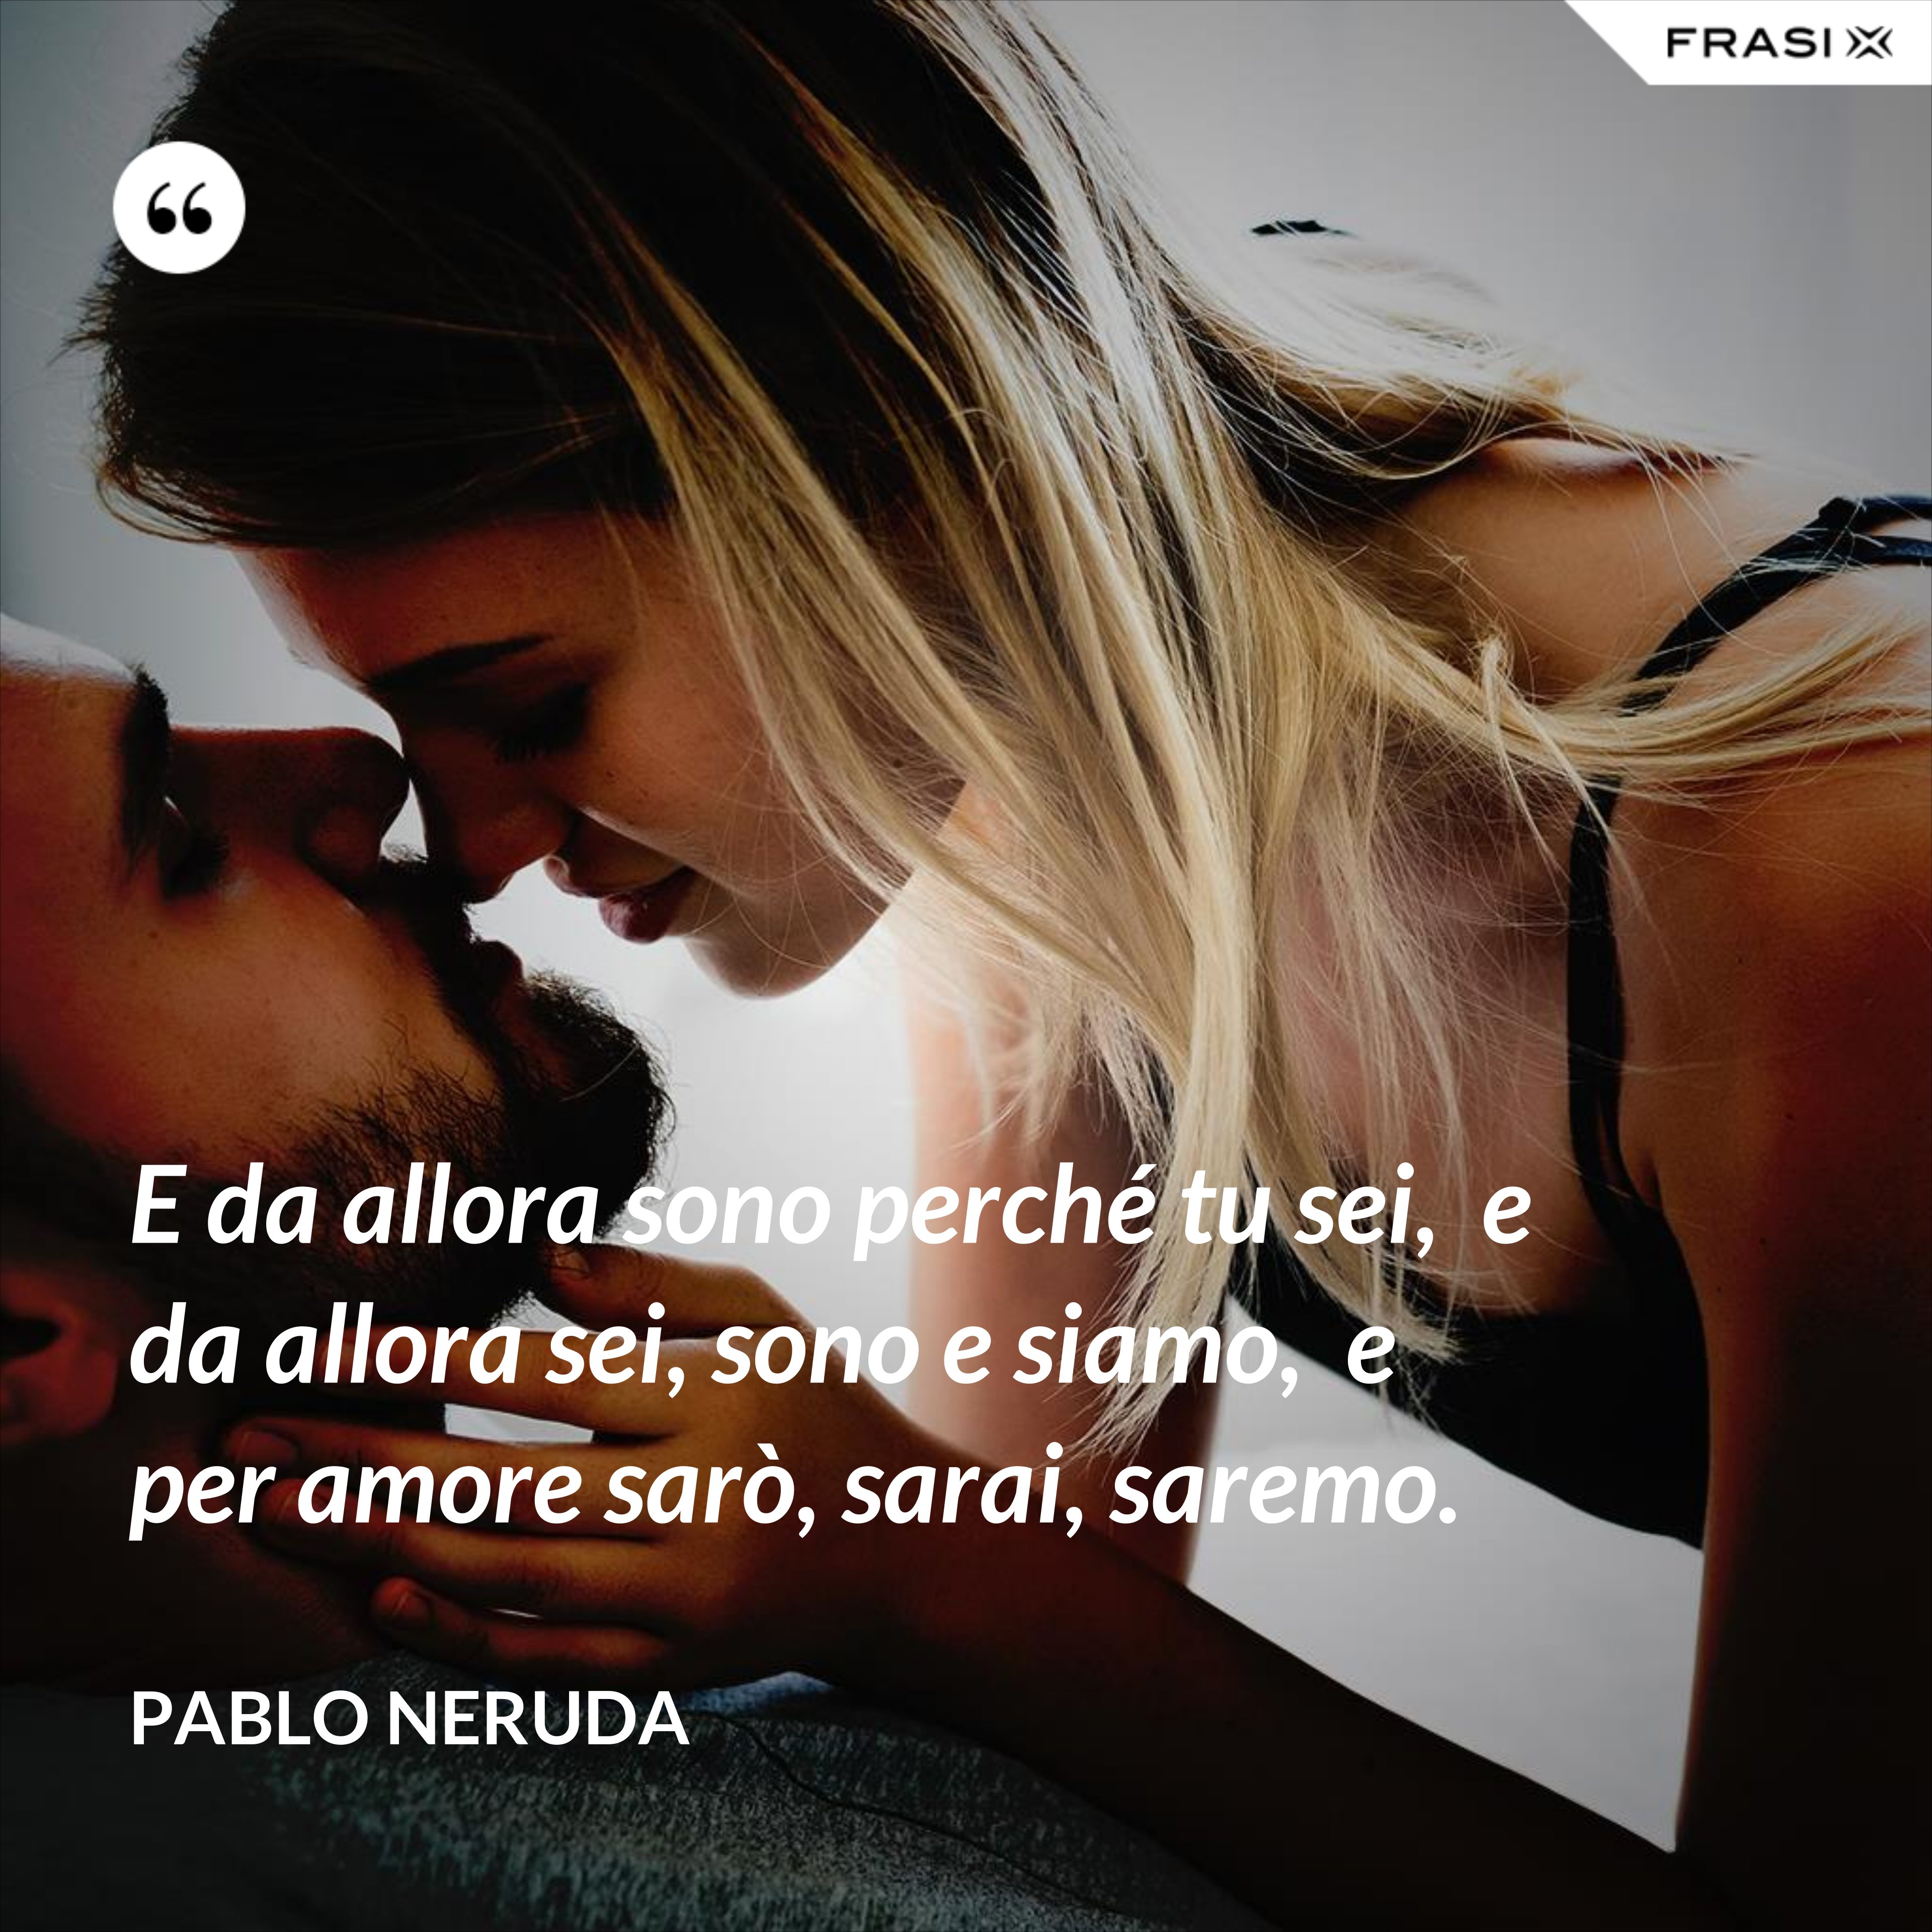 E da allora sono perché tu sei,  e da allora sei, sono e siamo,  e per amore sarò, sarai, saremo. - Pablo Neruda